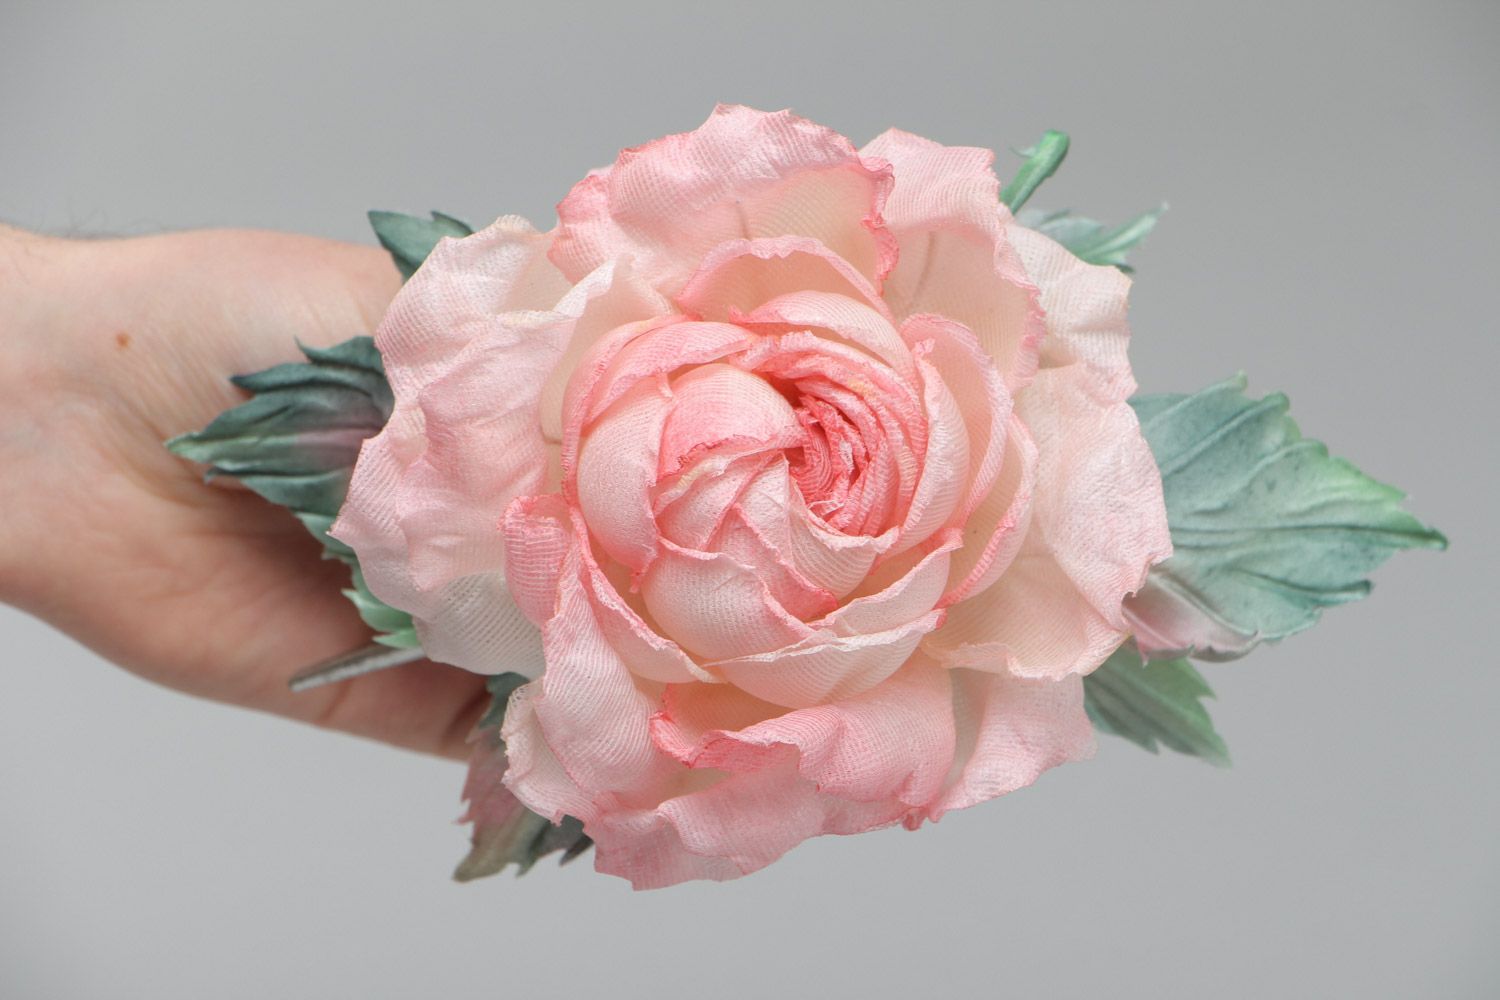 Брошь в виде розы крупная розовая романтичная изящная красивая ручной работы фото 5